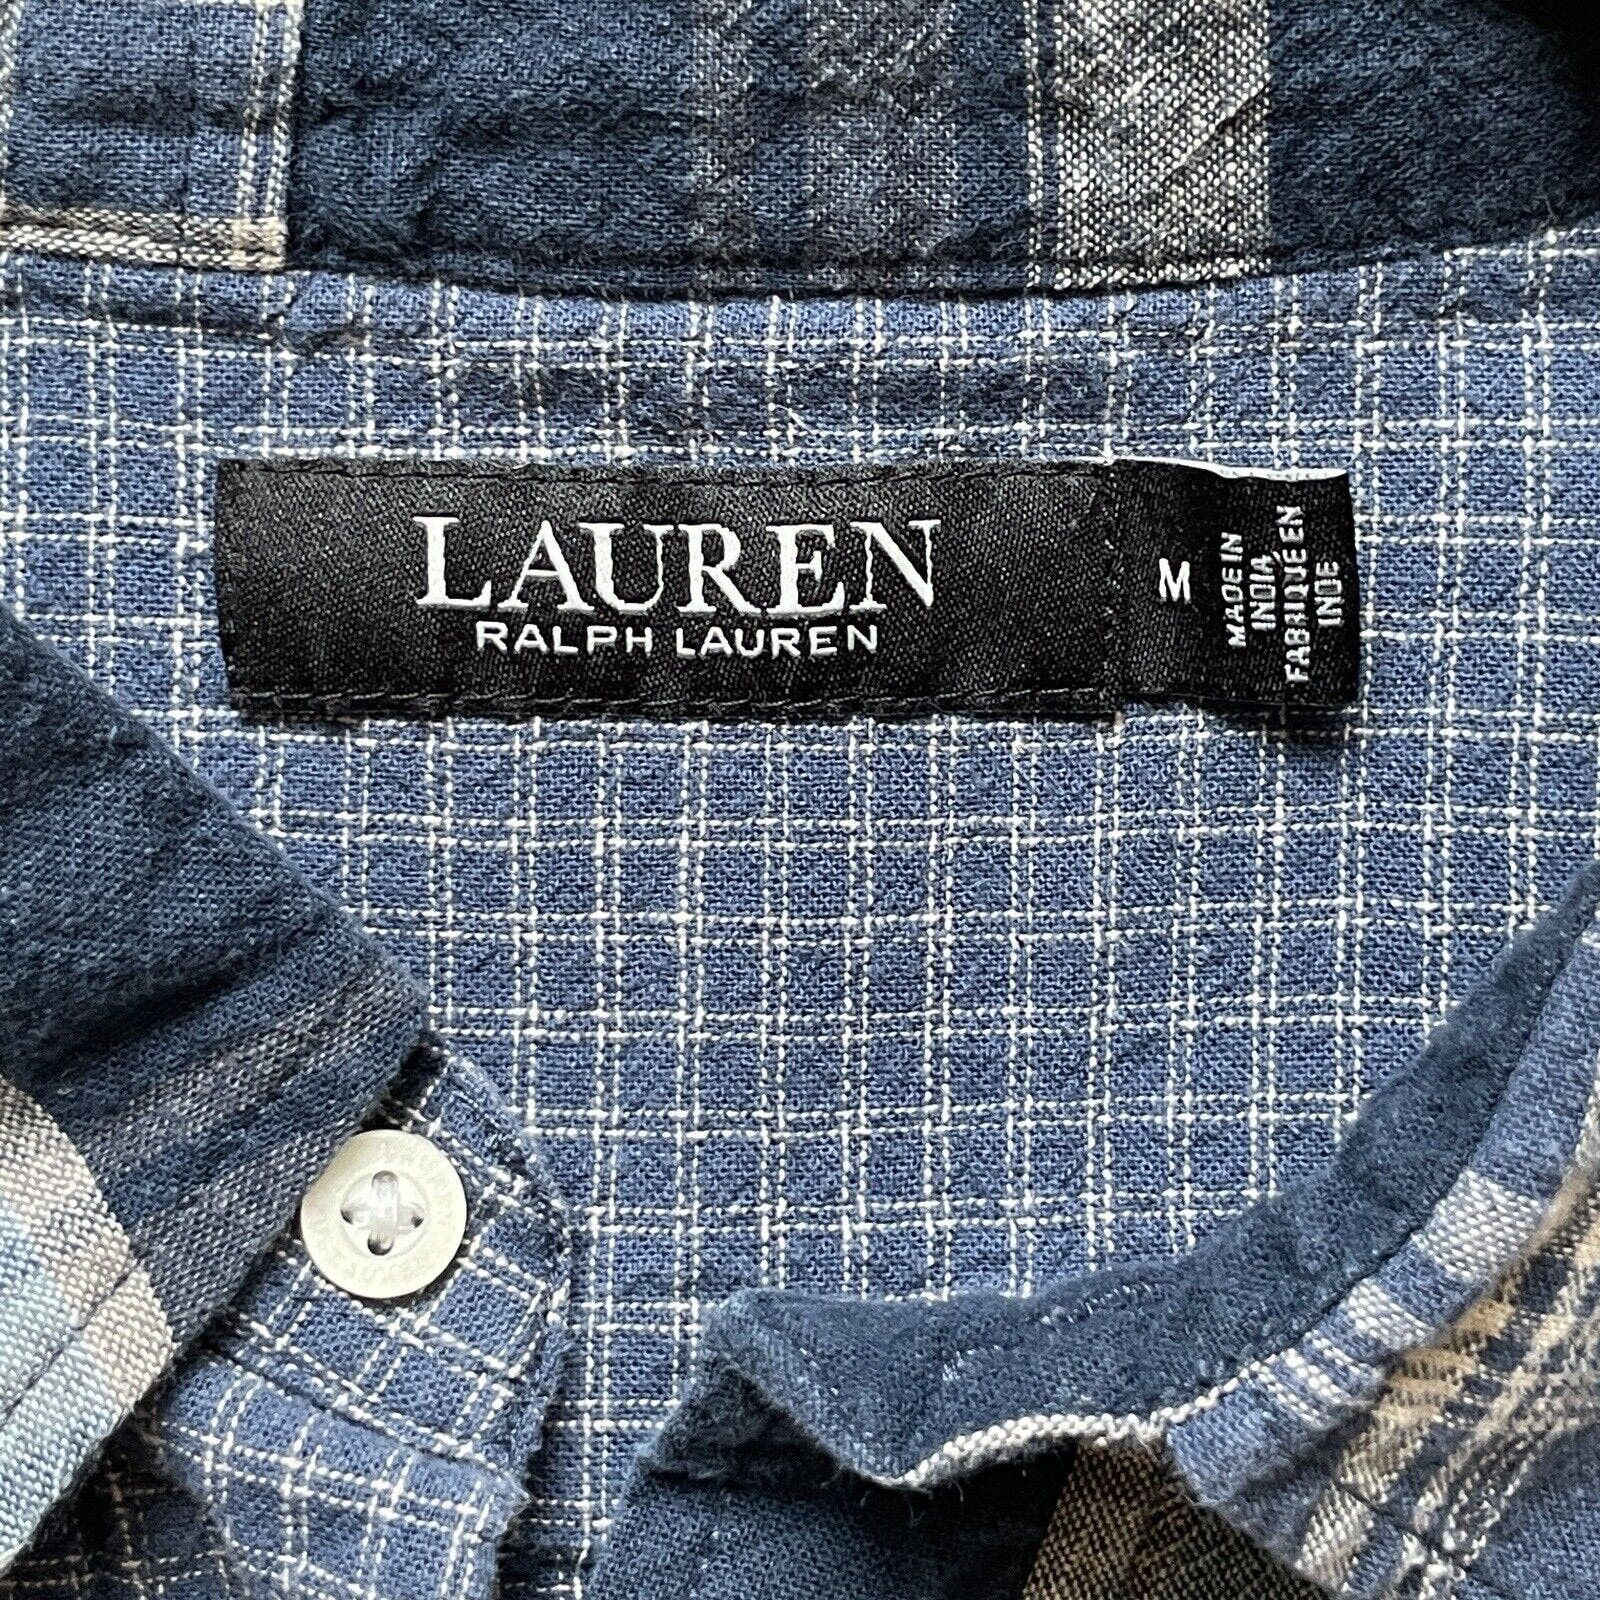 Lauren Ralph Lauren Ralph Lauren Shirt Women Medium Denim Patchwork Linen Cowboy Size M / US 6-8 / IT 42-44 - 4 Thumbnail